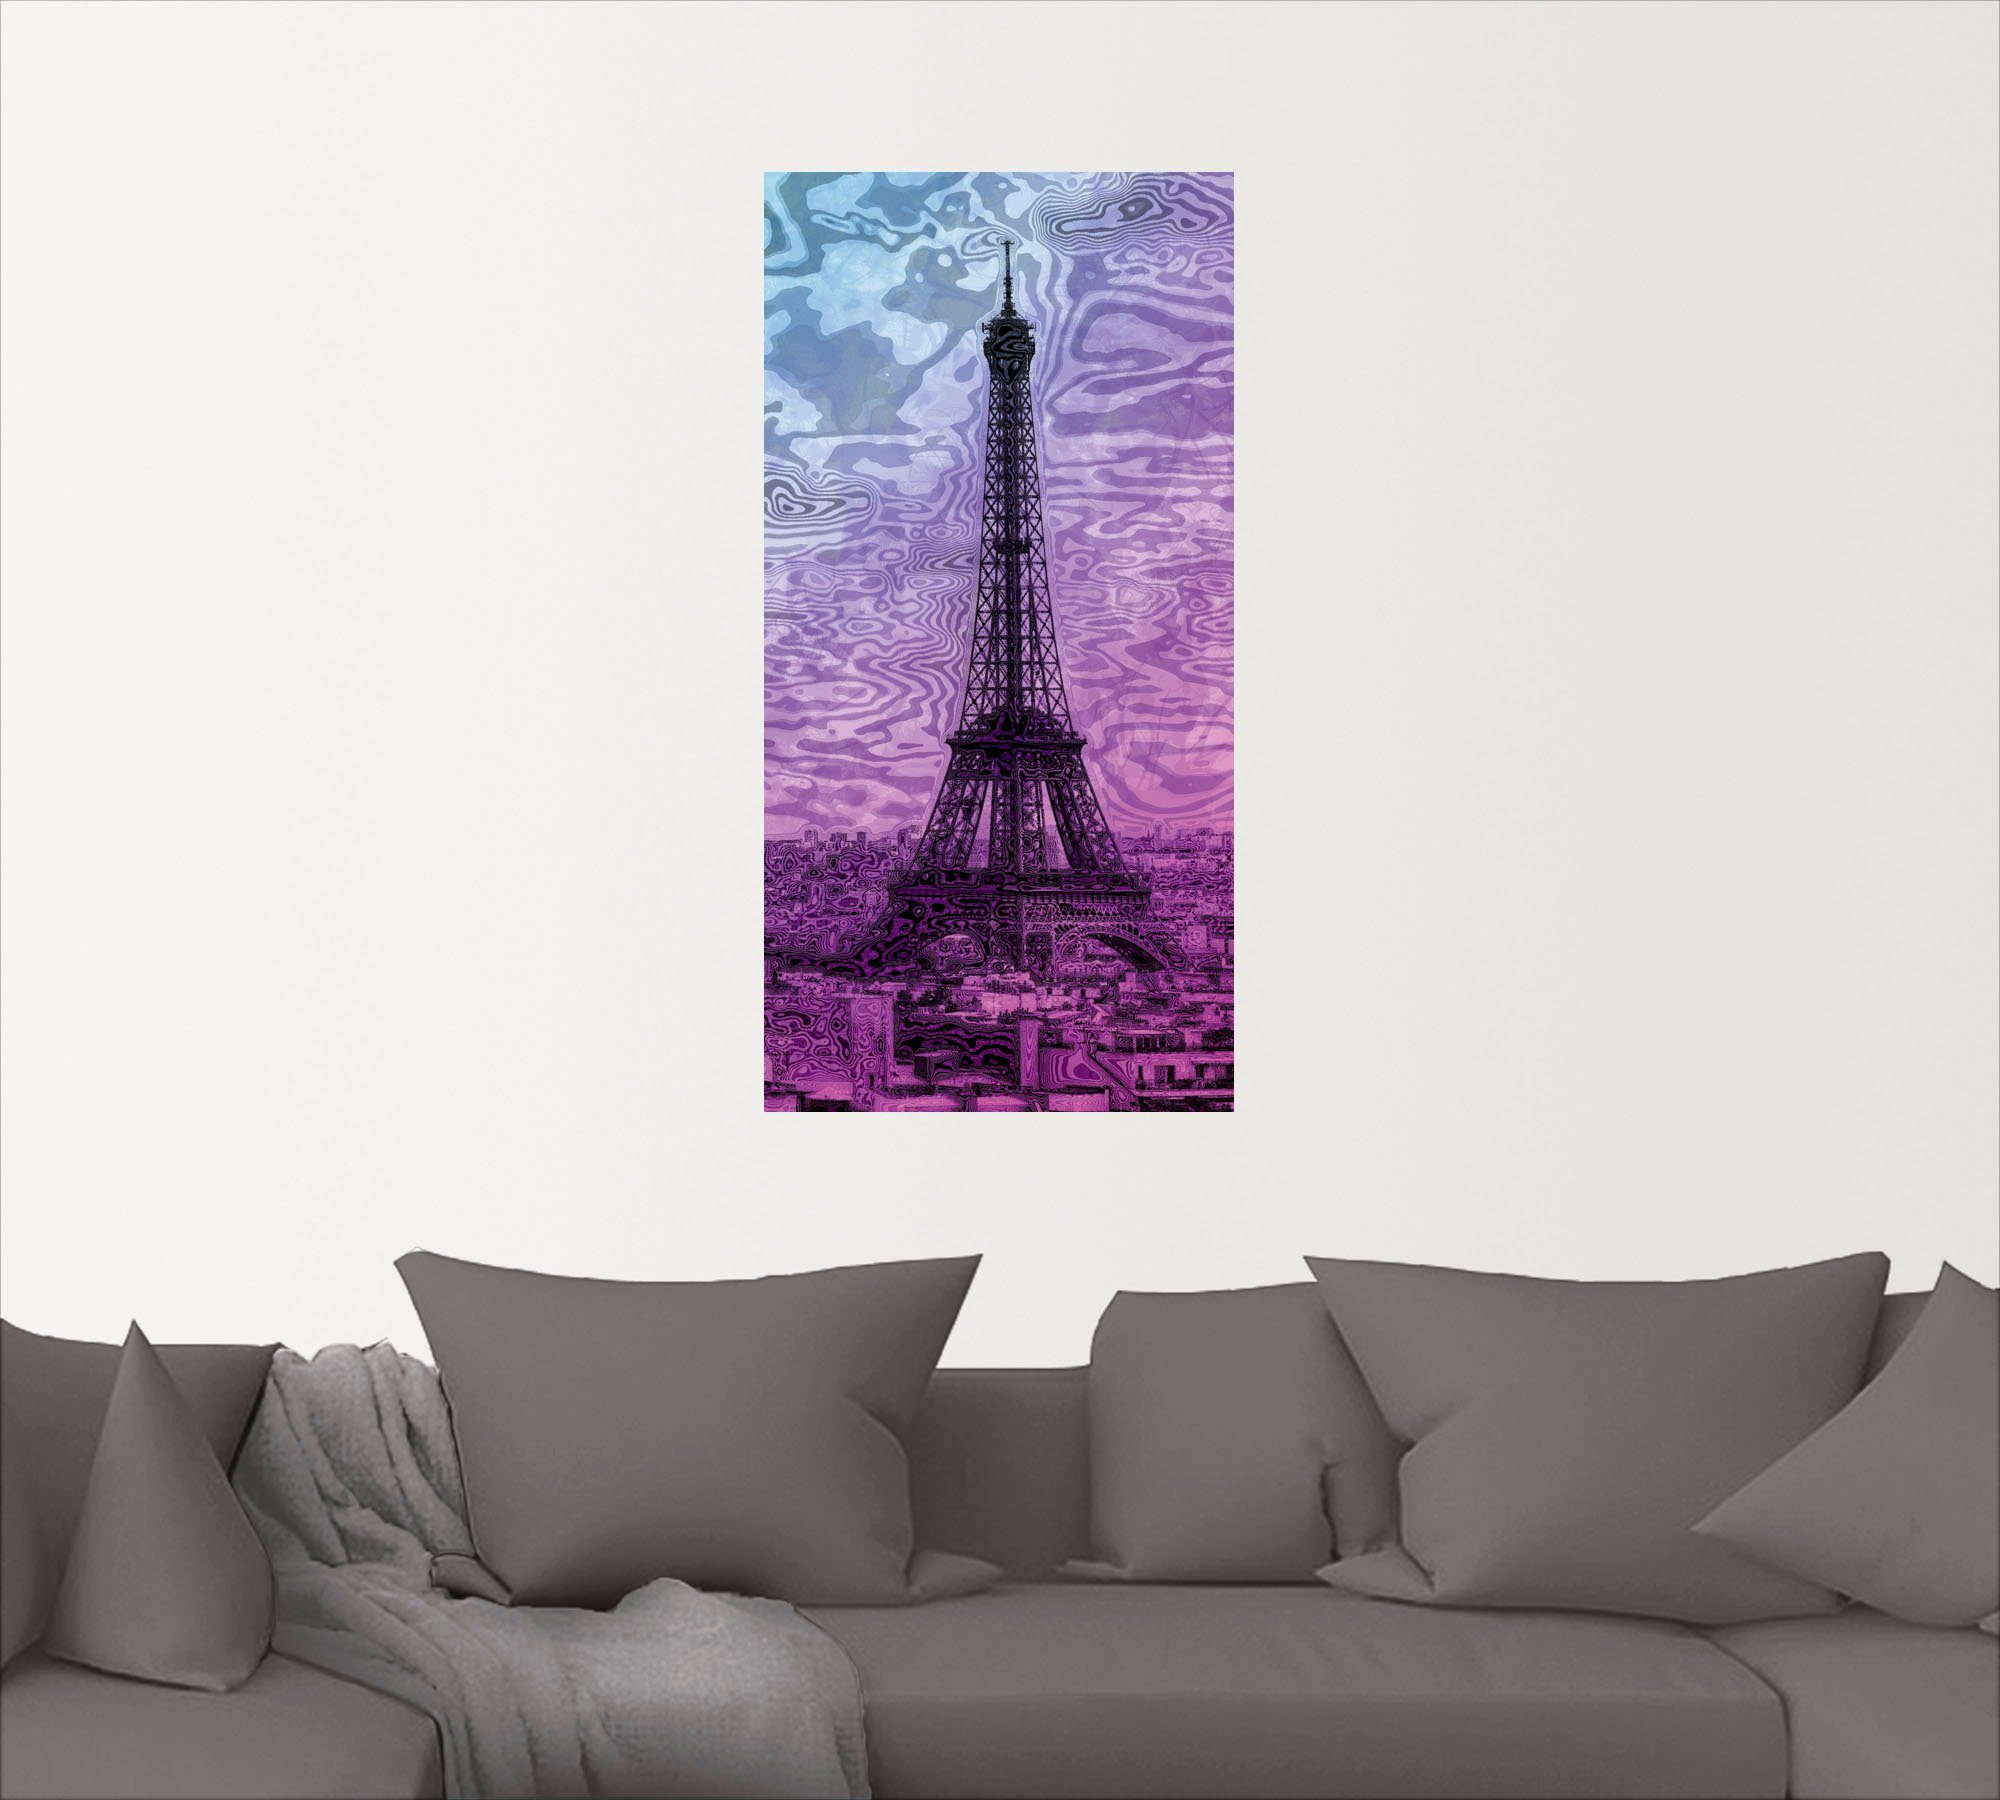 Artland Artprint Parijs Eiffeltoren paars/blauw in vele afmetingen & productsoorten - artprint van aluminium / artprint voor buiten, artprint op linnen, poster, muursticker / wandf